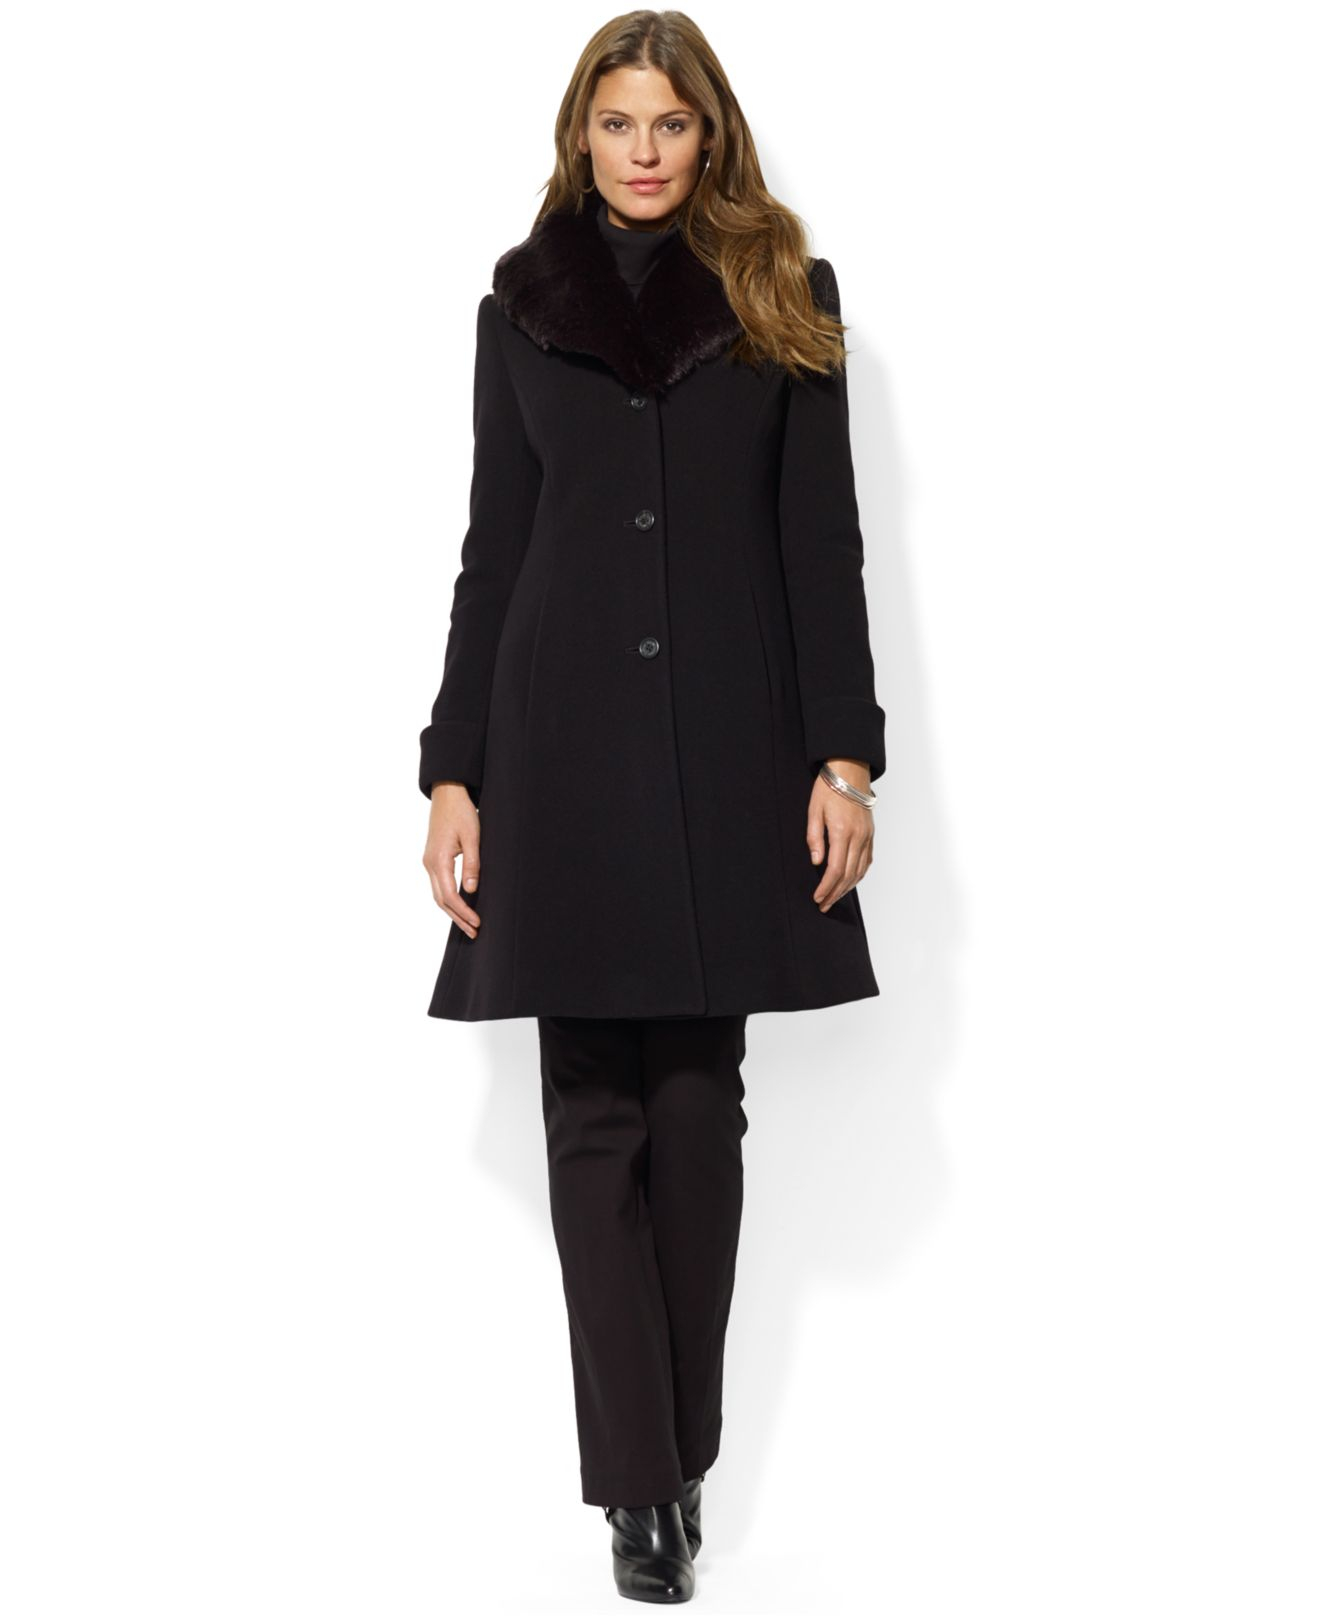 Lauren by ralph lauren Faux-Fur-Collar A-Line Coat in Black | Lyst